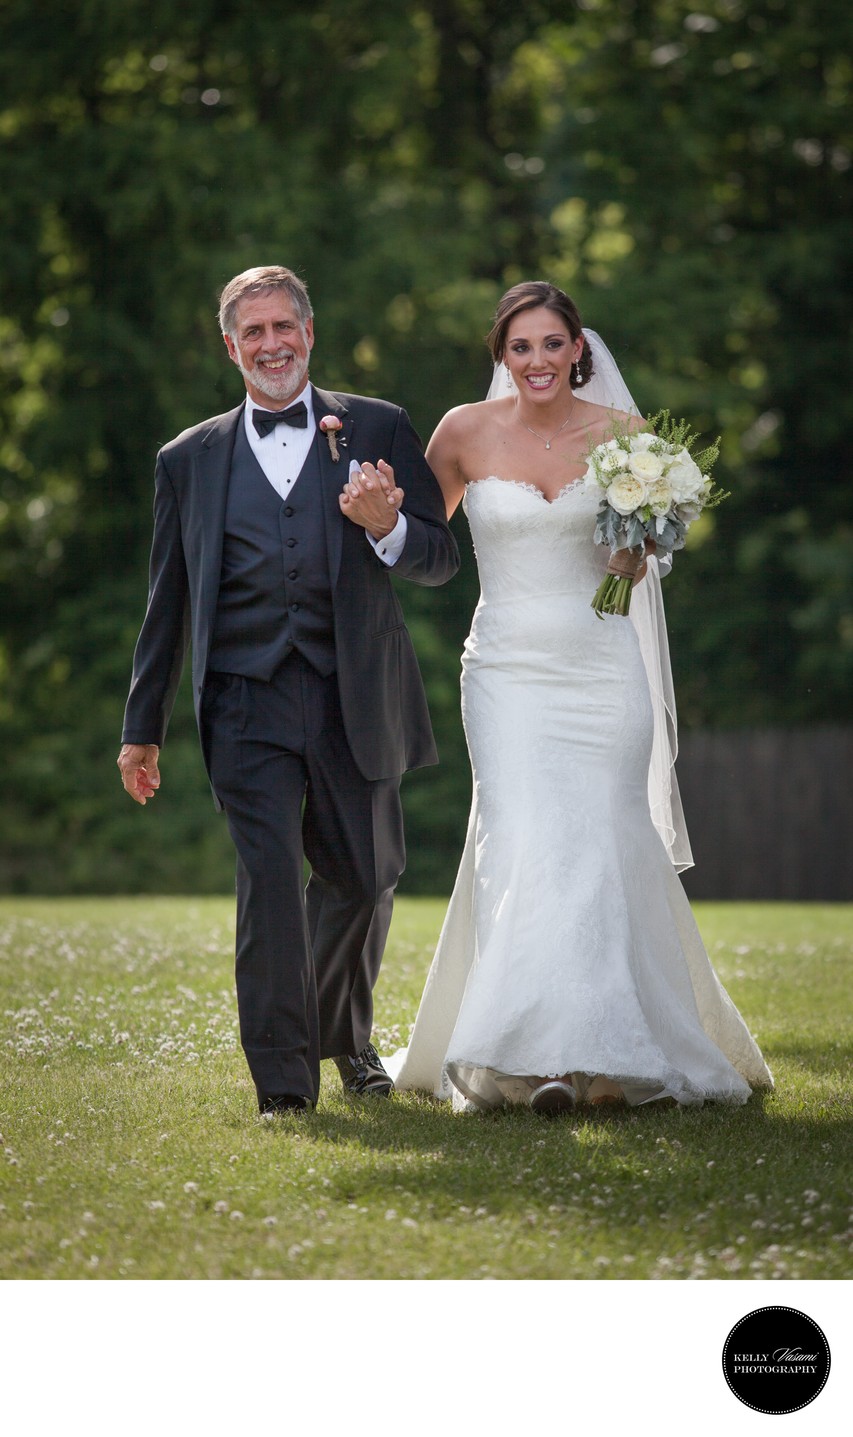 Dad Walking Bride Down Aisle | Outdoor Wedding Ceremony